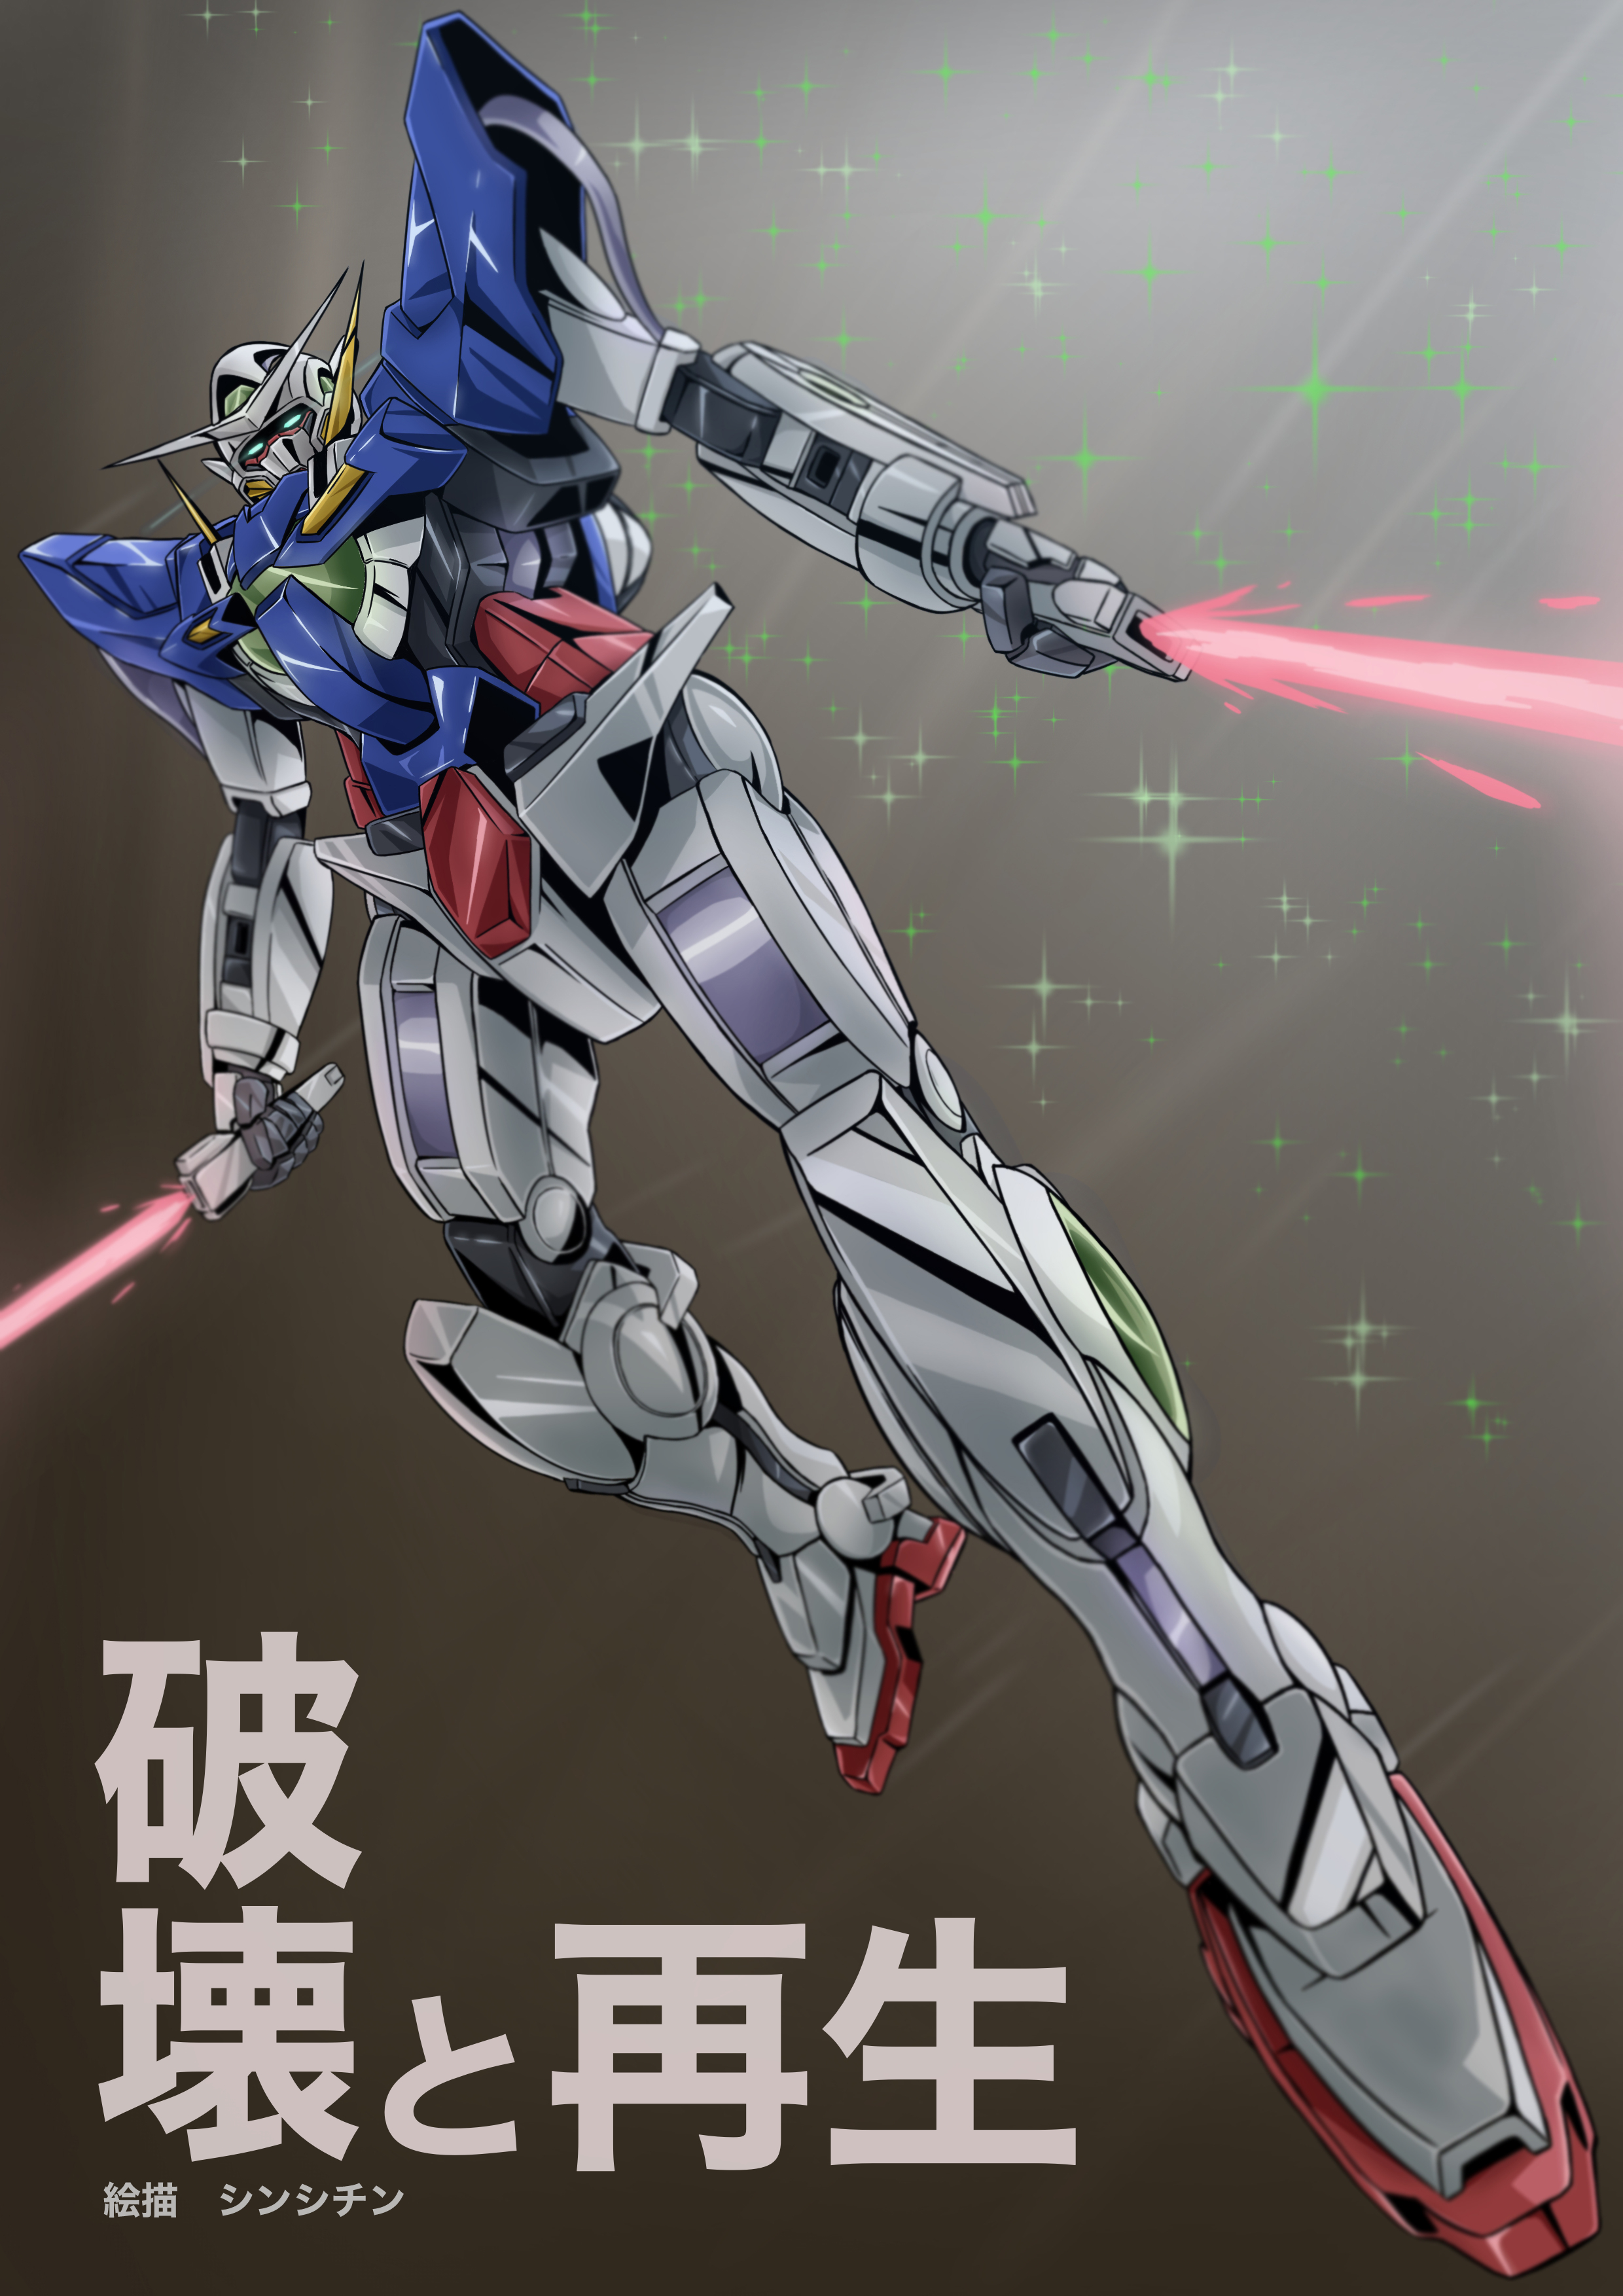 Anime Mechs Super Robot Taisen Gundam Mobile Suit Gundam 00 Gundam Exia Artwork Digital Art Fan Art  2480x3508